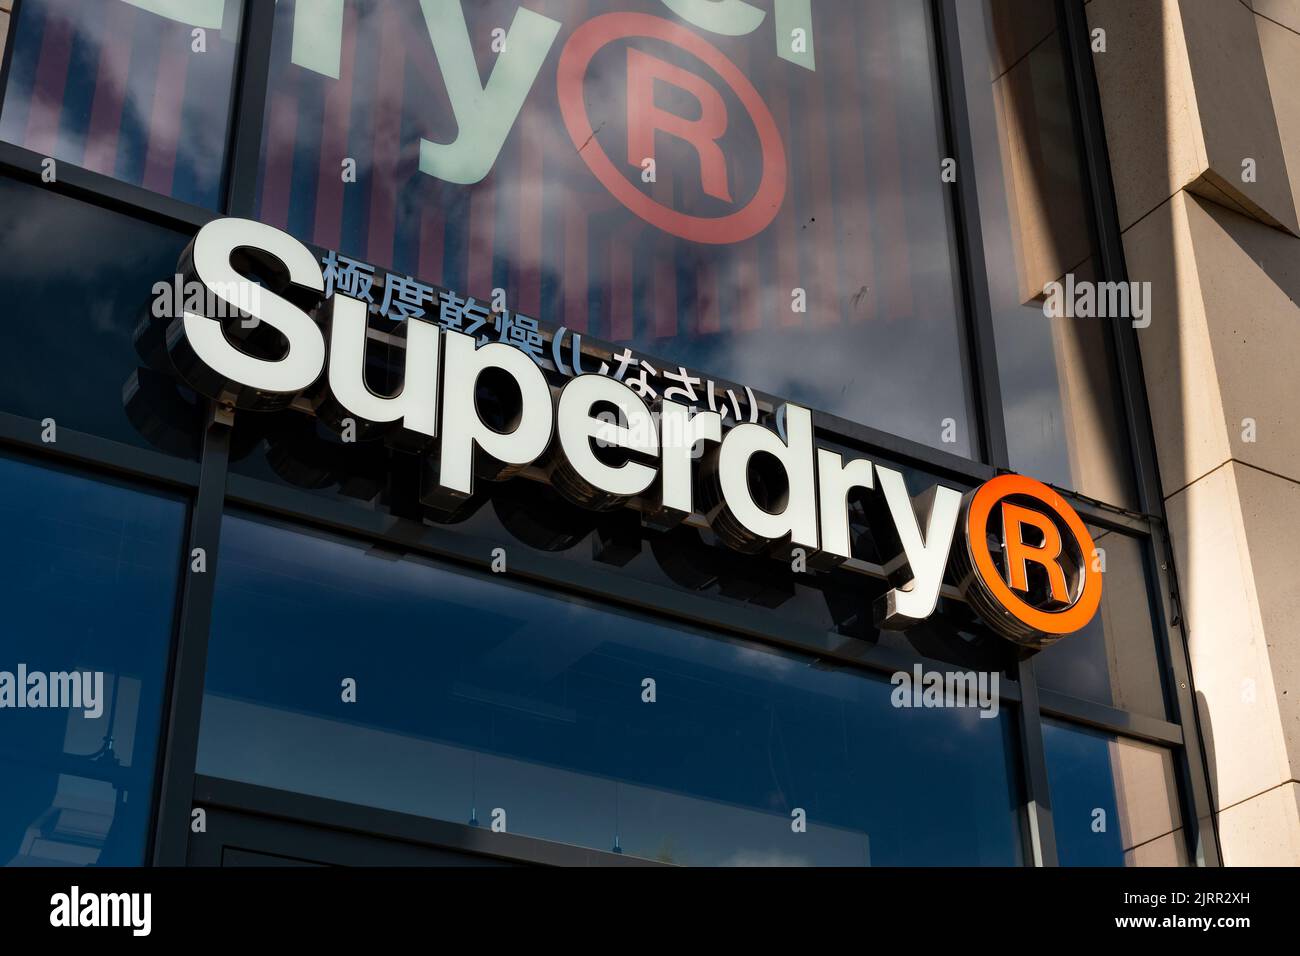 Superdry clothing immagini e fotografie stock ad alta risoluzione - Alamy